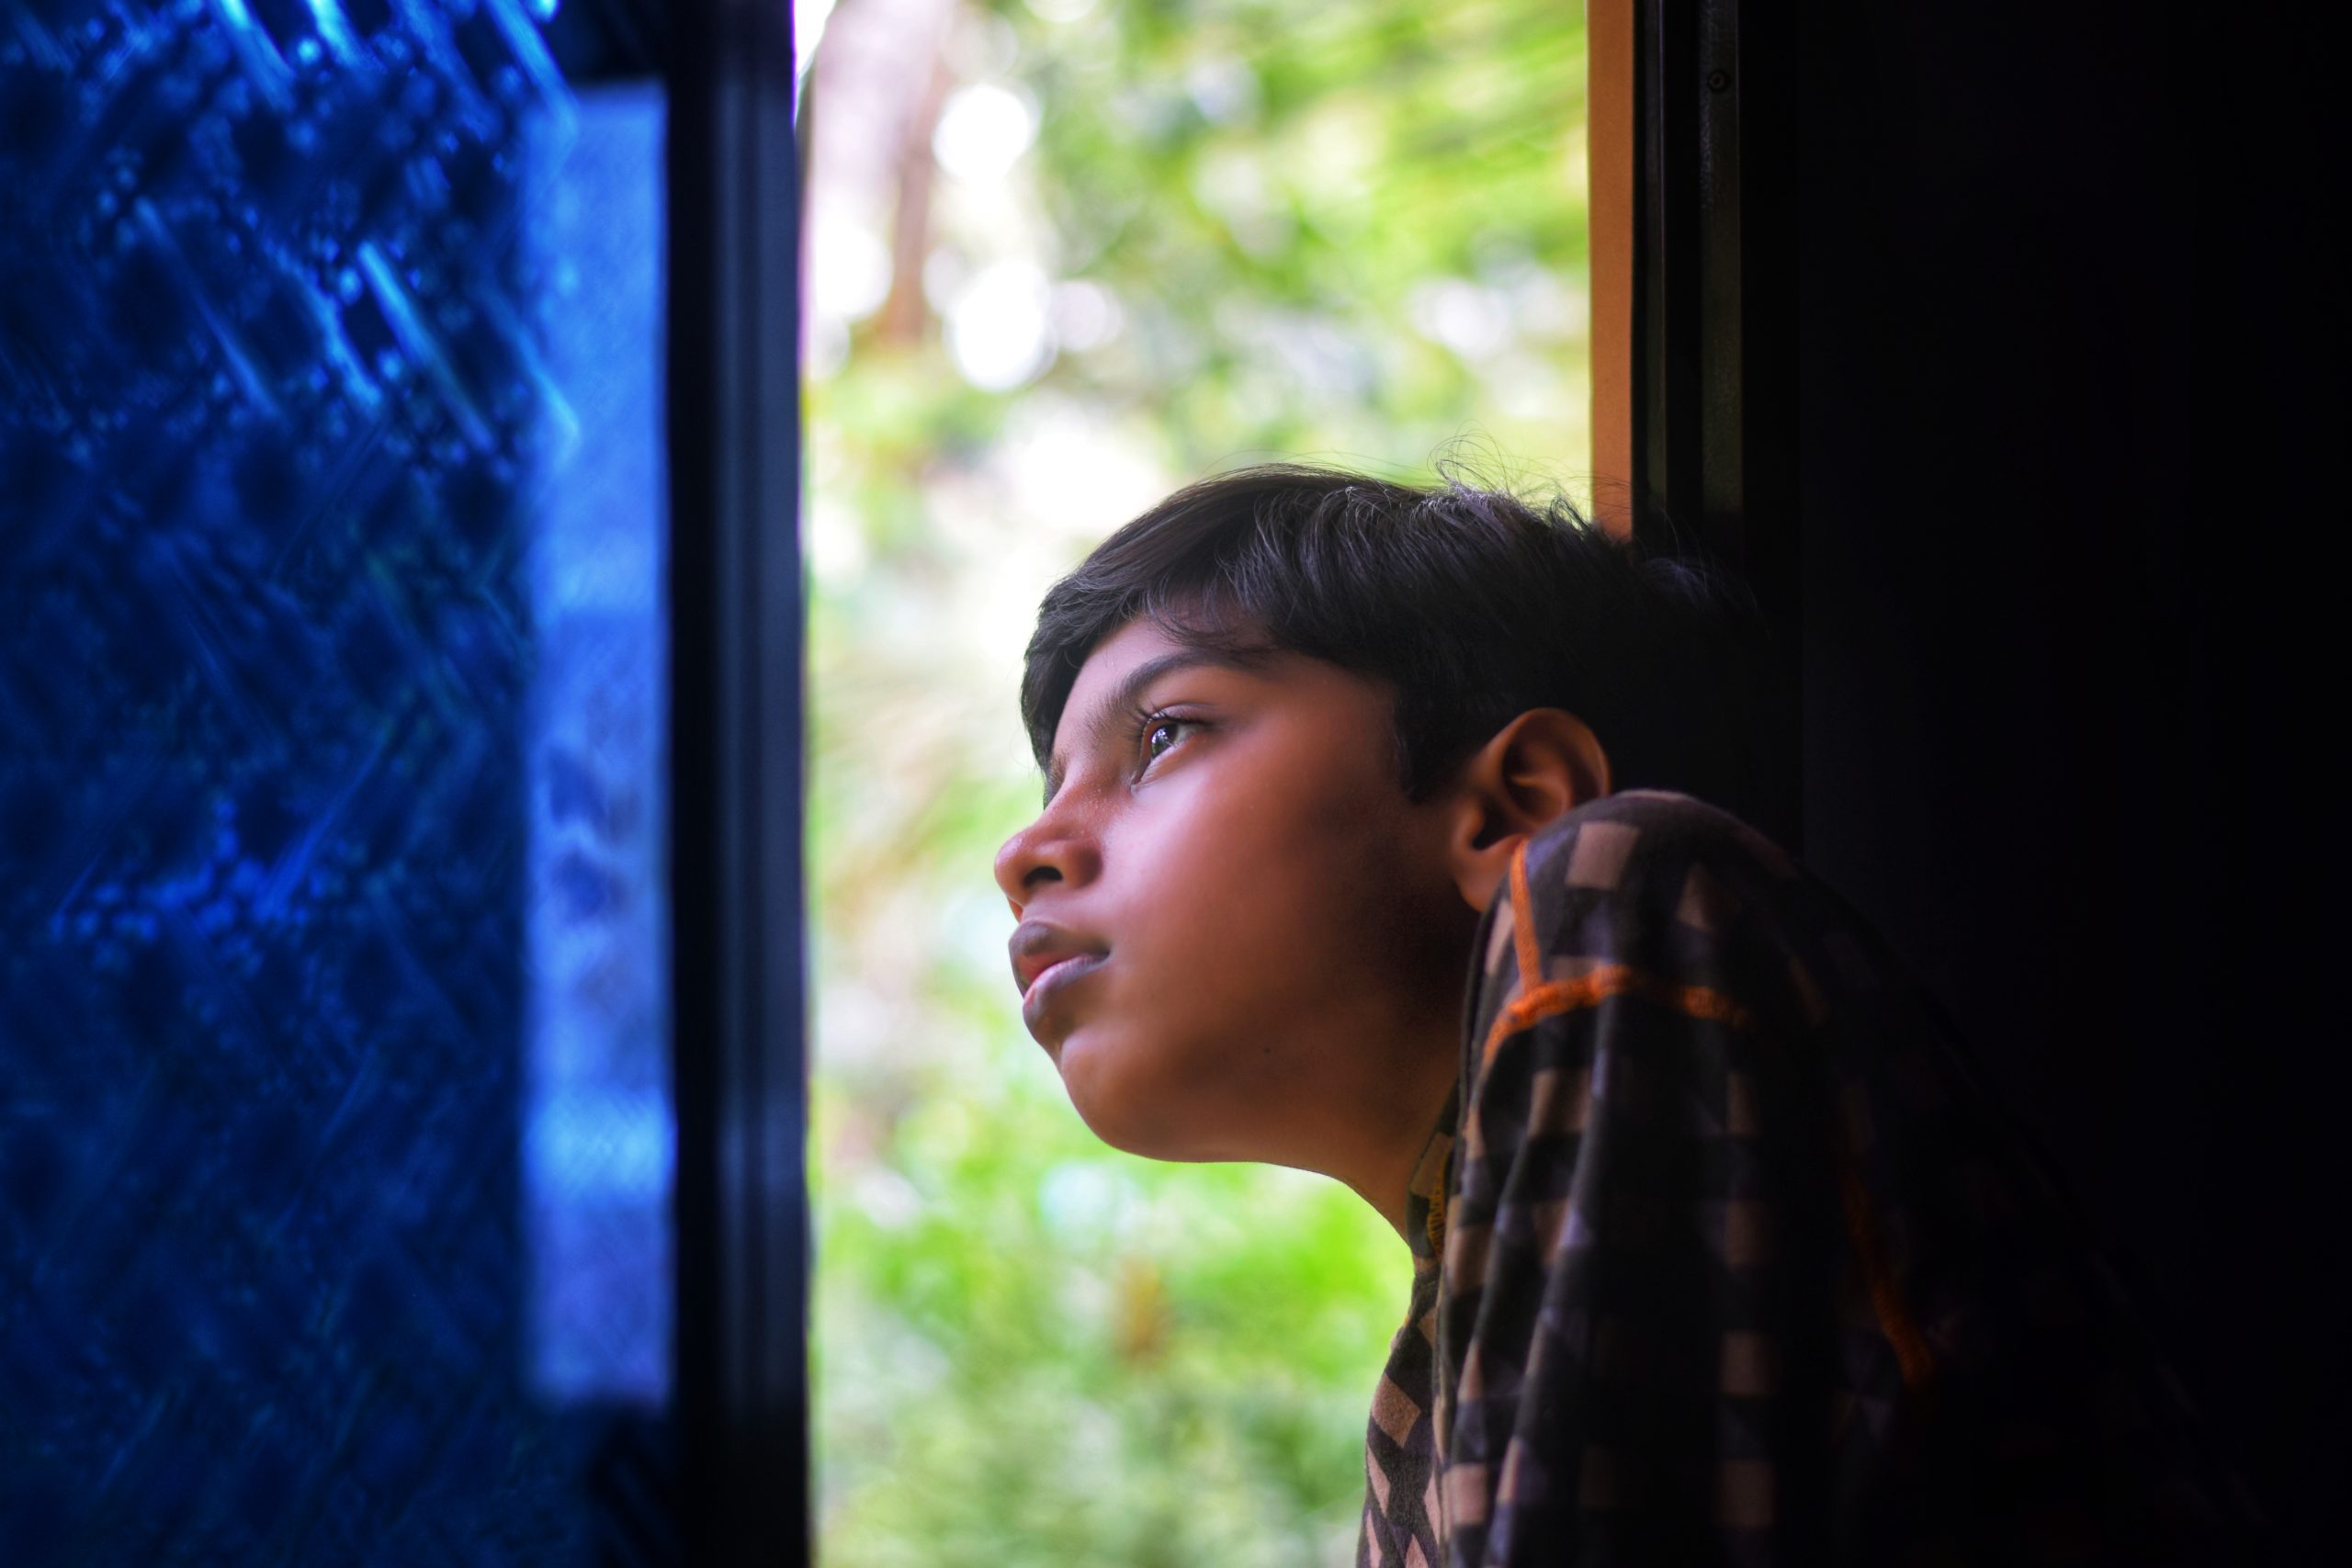 A boy looking through a window